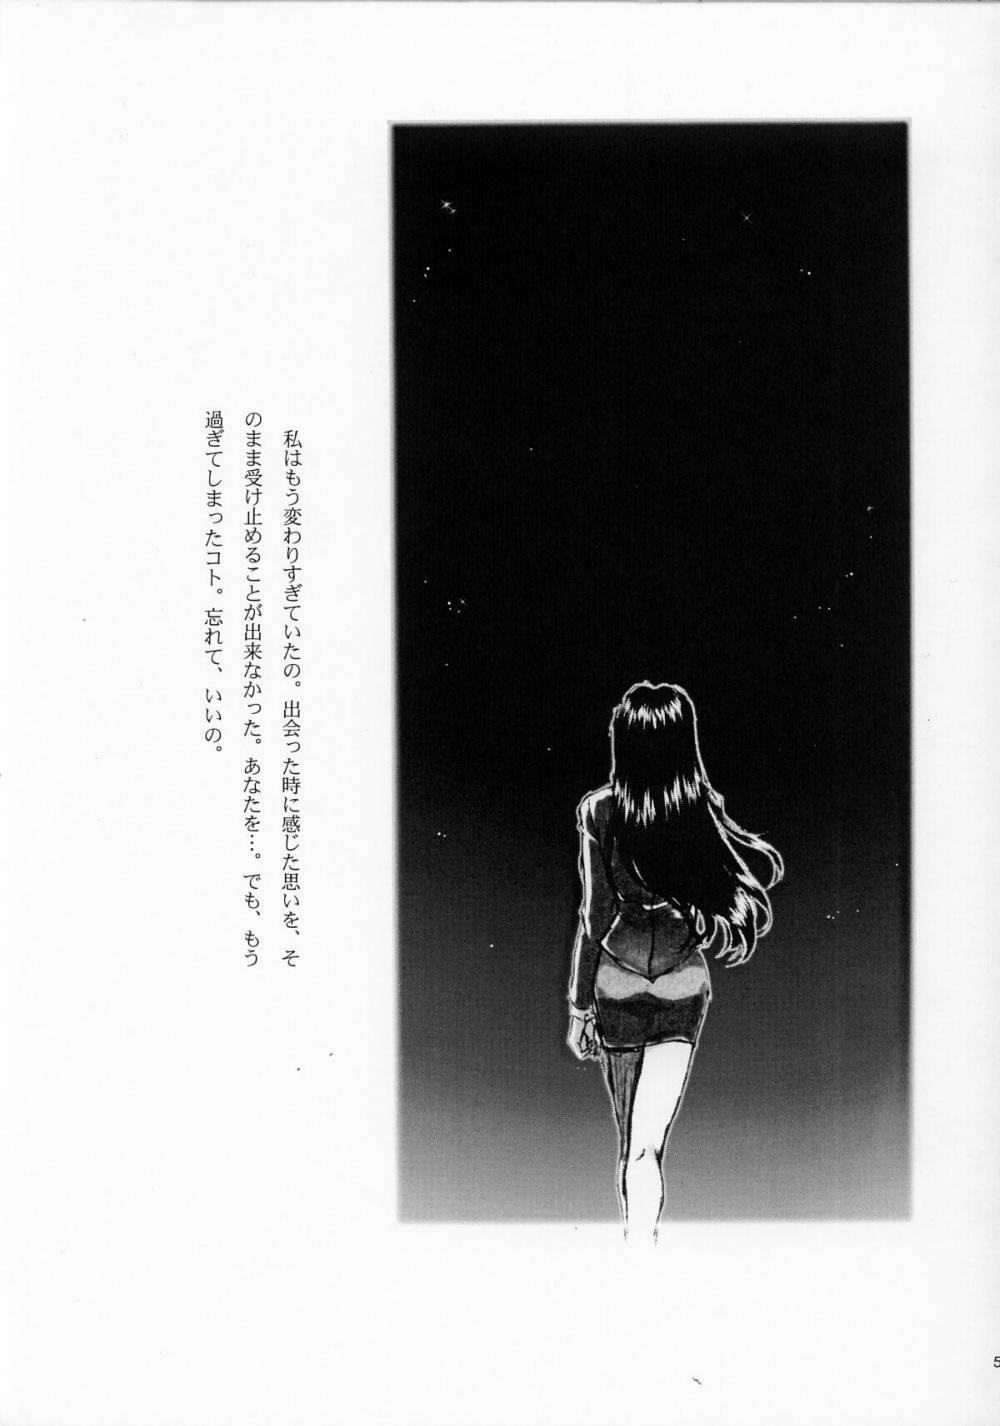 Pretty [TSK] Mai Hime ~Karen~ 1 Ichigo Ichie (Sakura Wars) - Sakura taisen Chica - Page 4